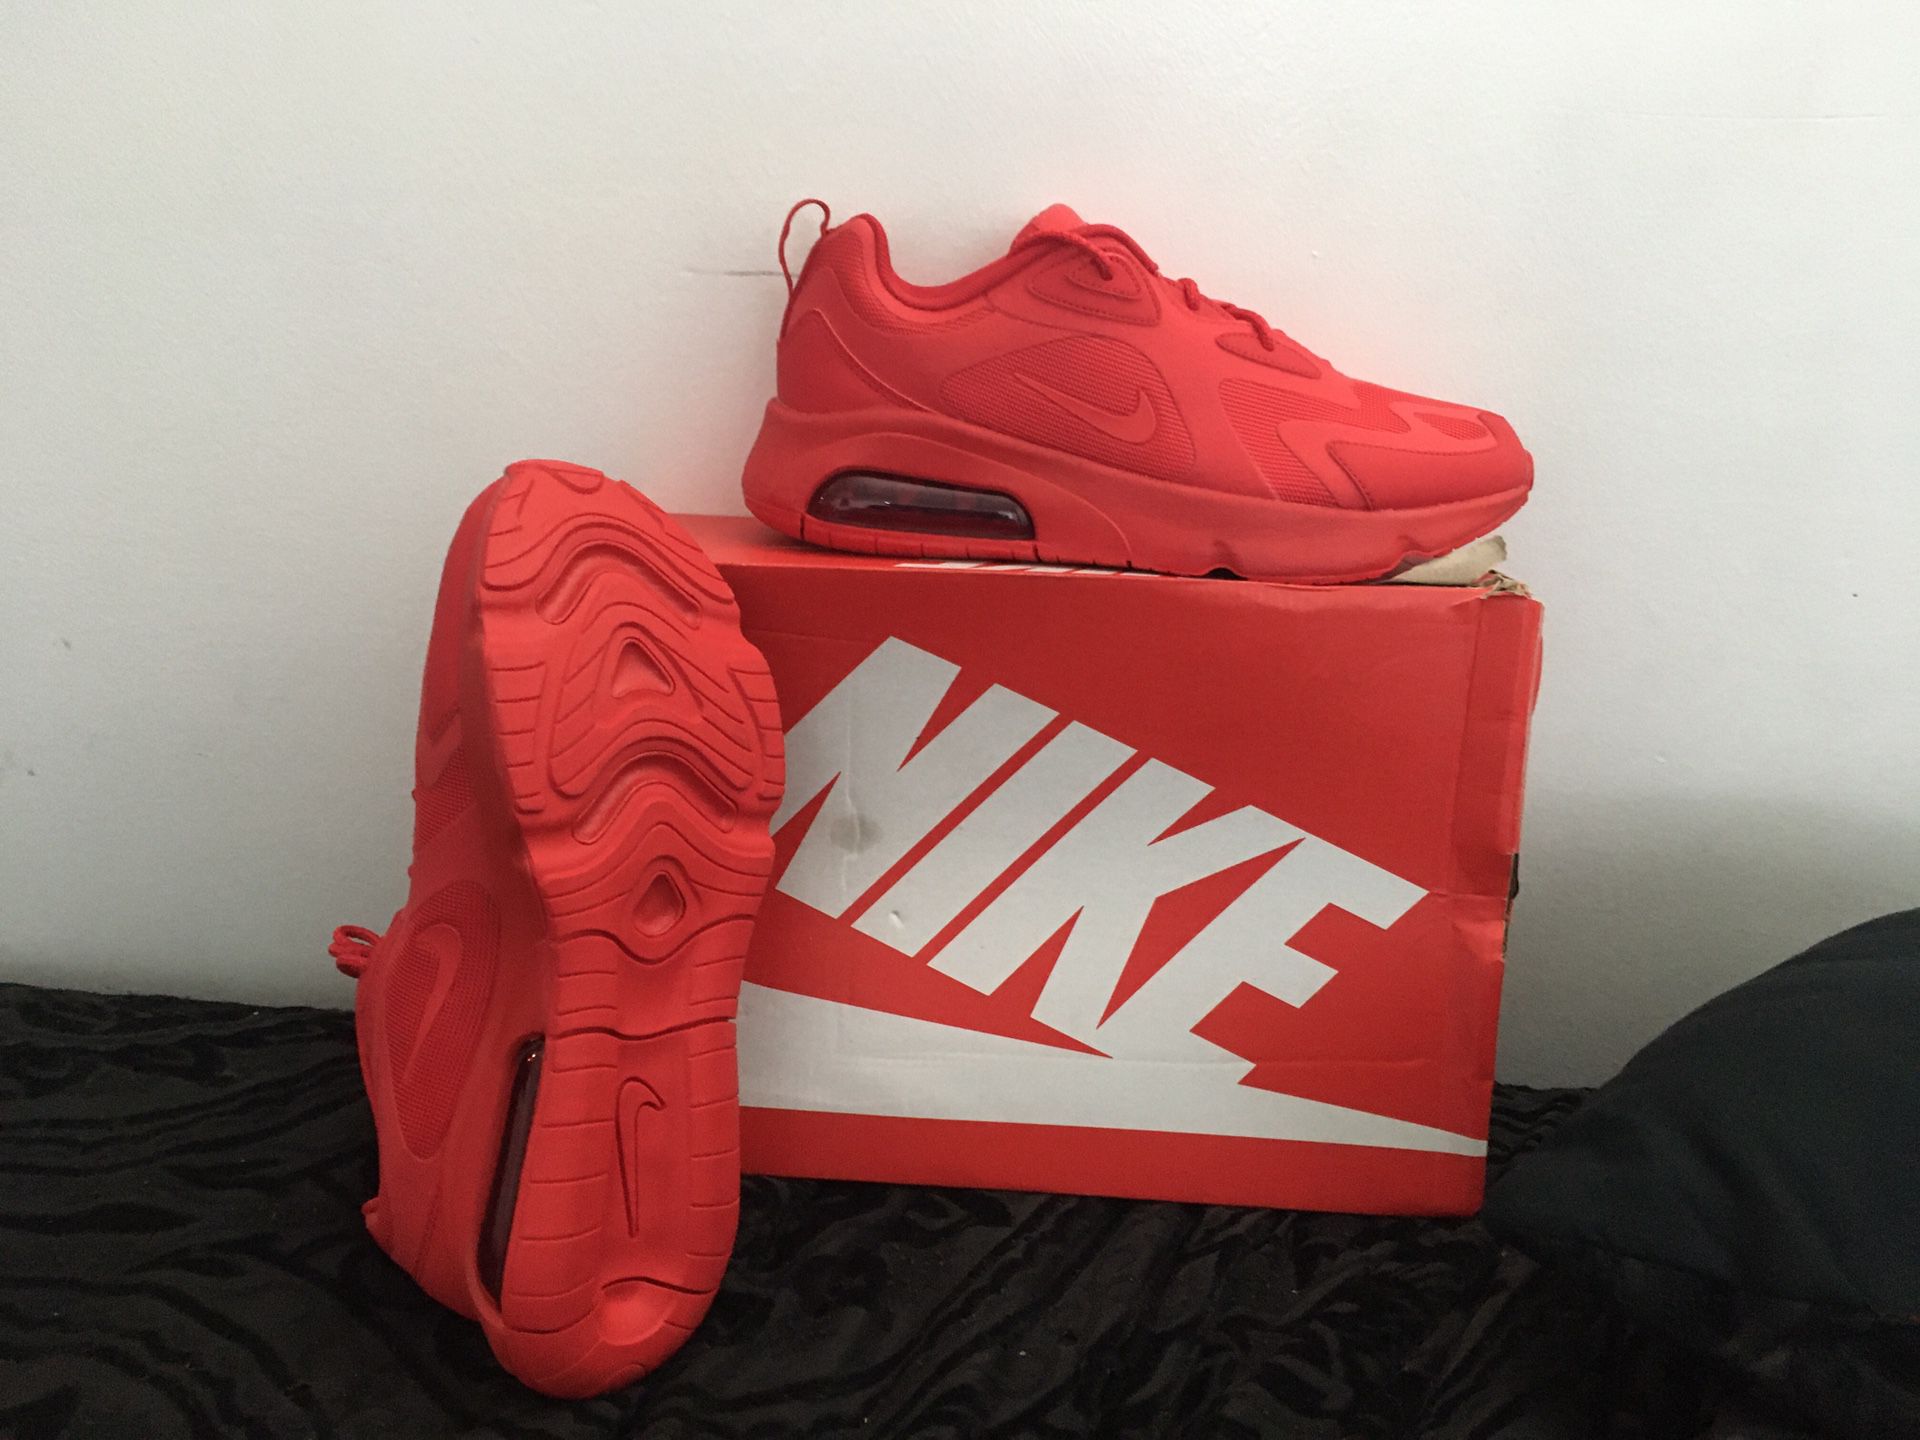 Red Nike air max